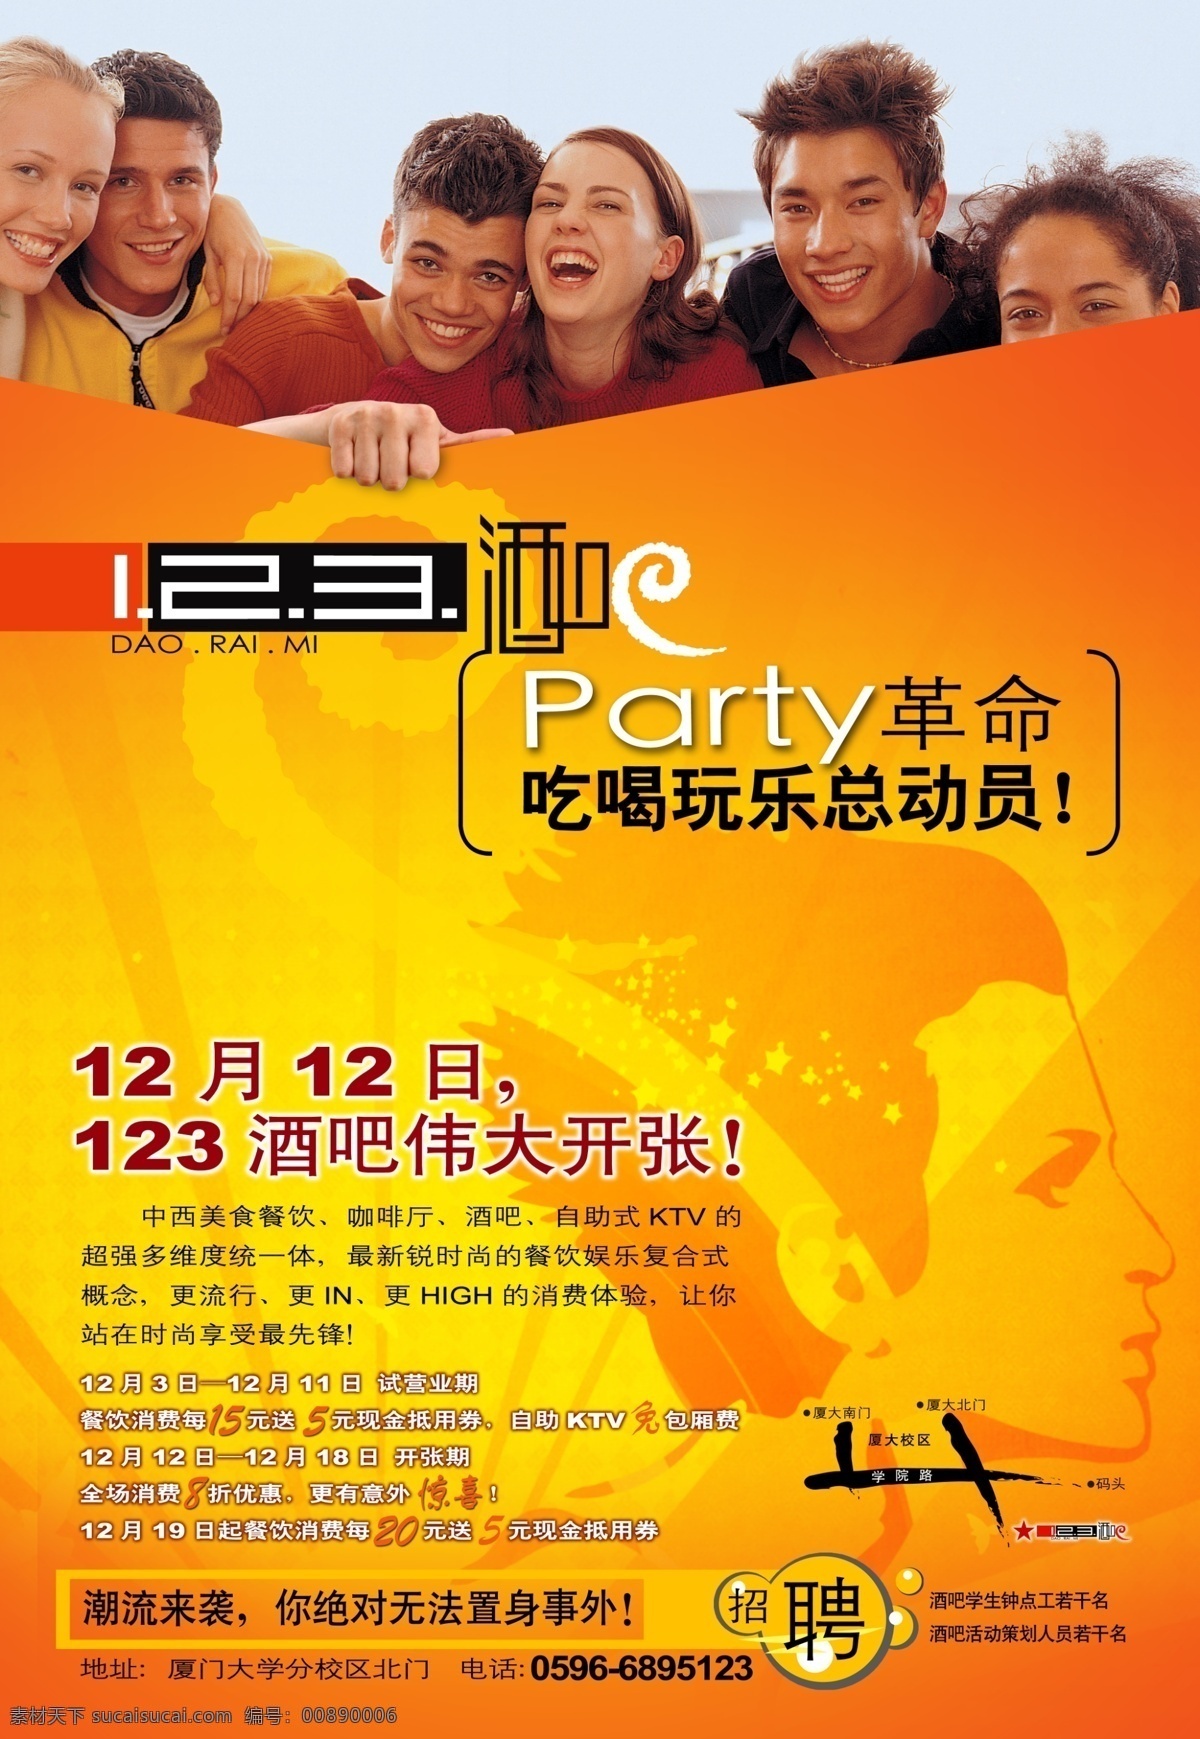 酒吧免费下载 party 橙色系 酒吧 dm 单 模板 酒吧海报模板 其他海报设计